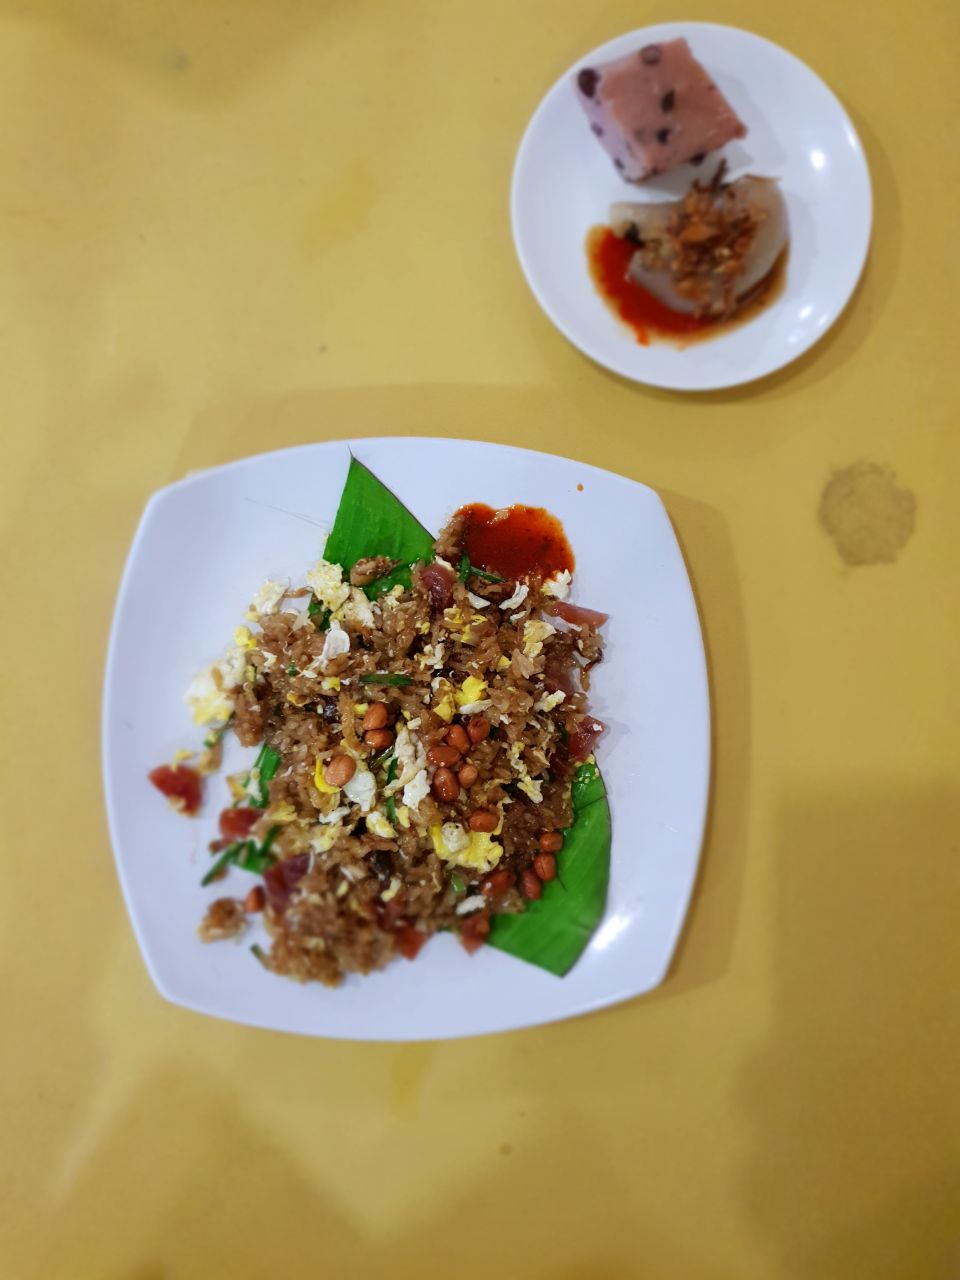 PMK (大華茶粿)  Burpple - 5 Reviews - Pudu, Malaysia